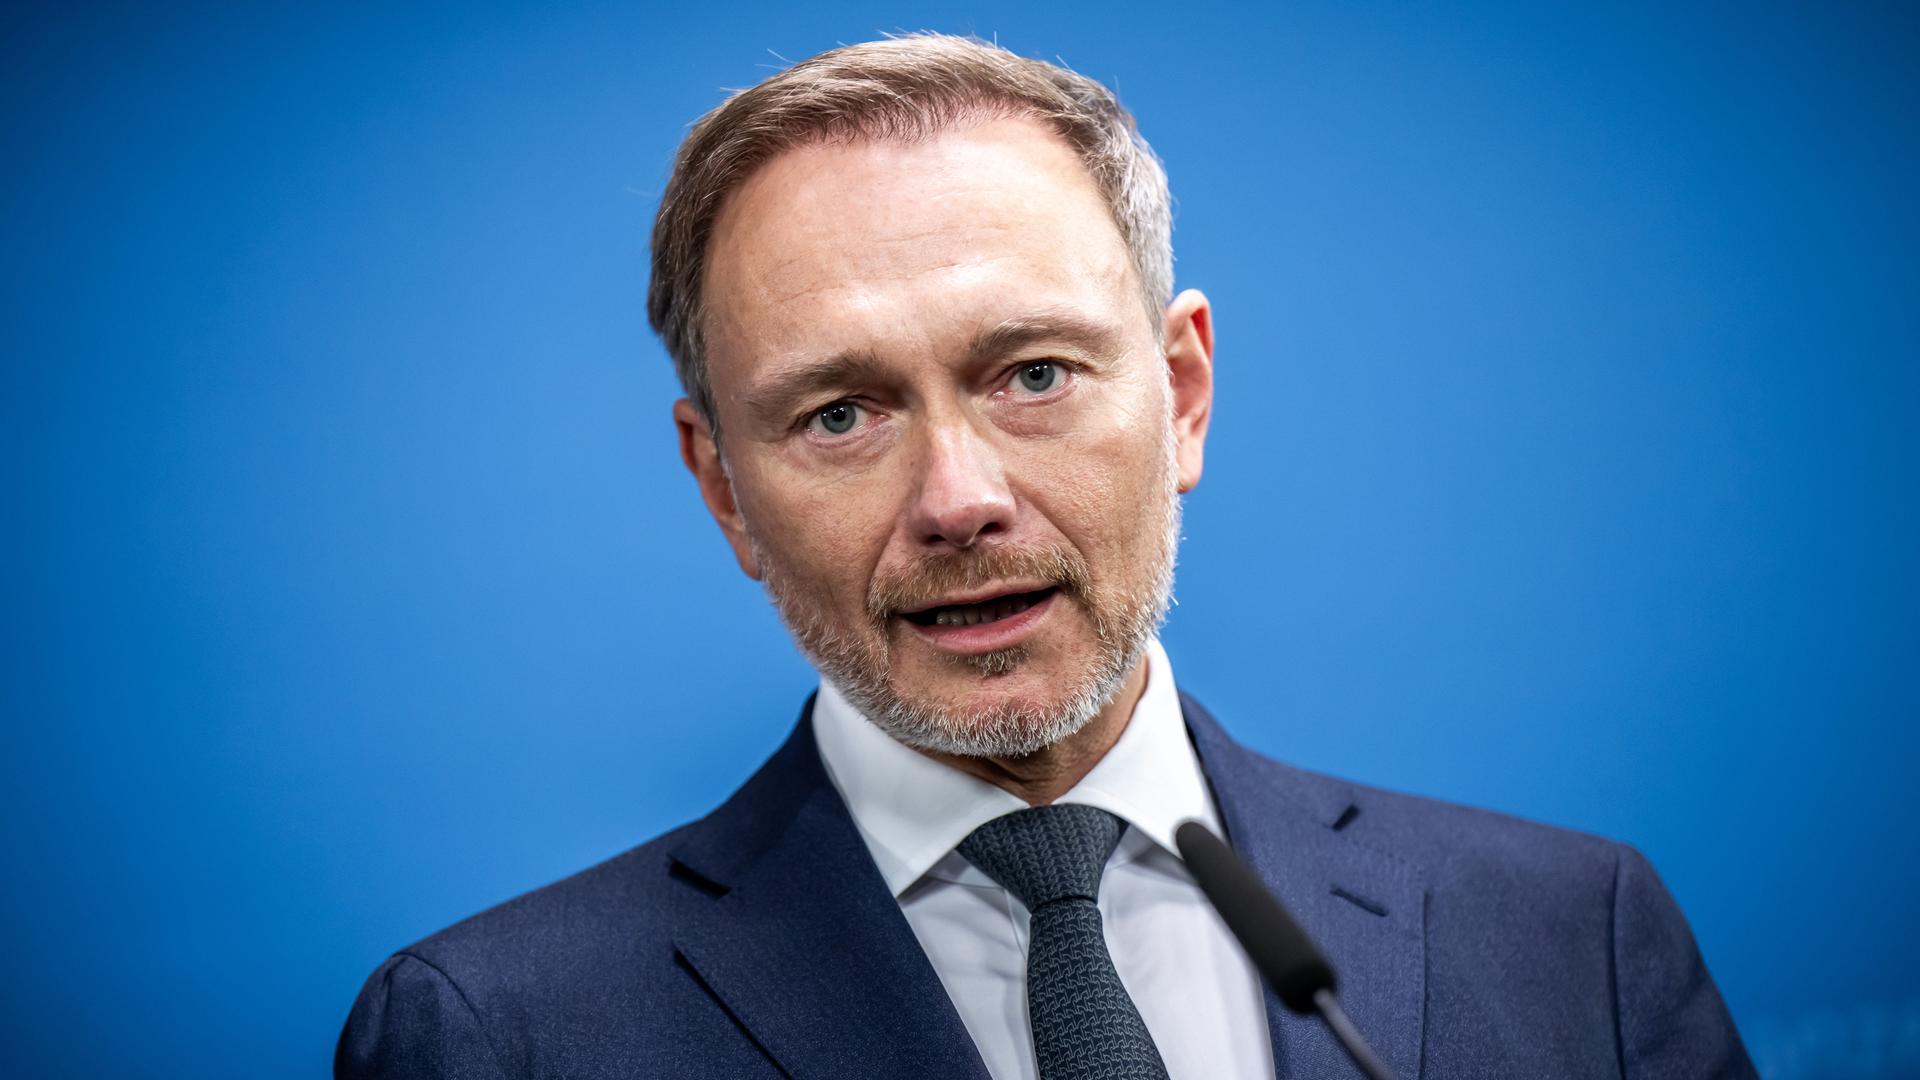 Christian Lindner (FDP), Bundesminister der Finanzen, gibt ein Pressestatement zu den Auswirkungen des Urteils des Bundesverfassungsgerichts zur Verwendung von Haushaltsmitteln.